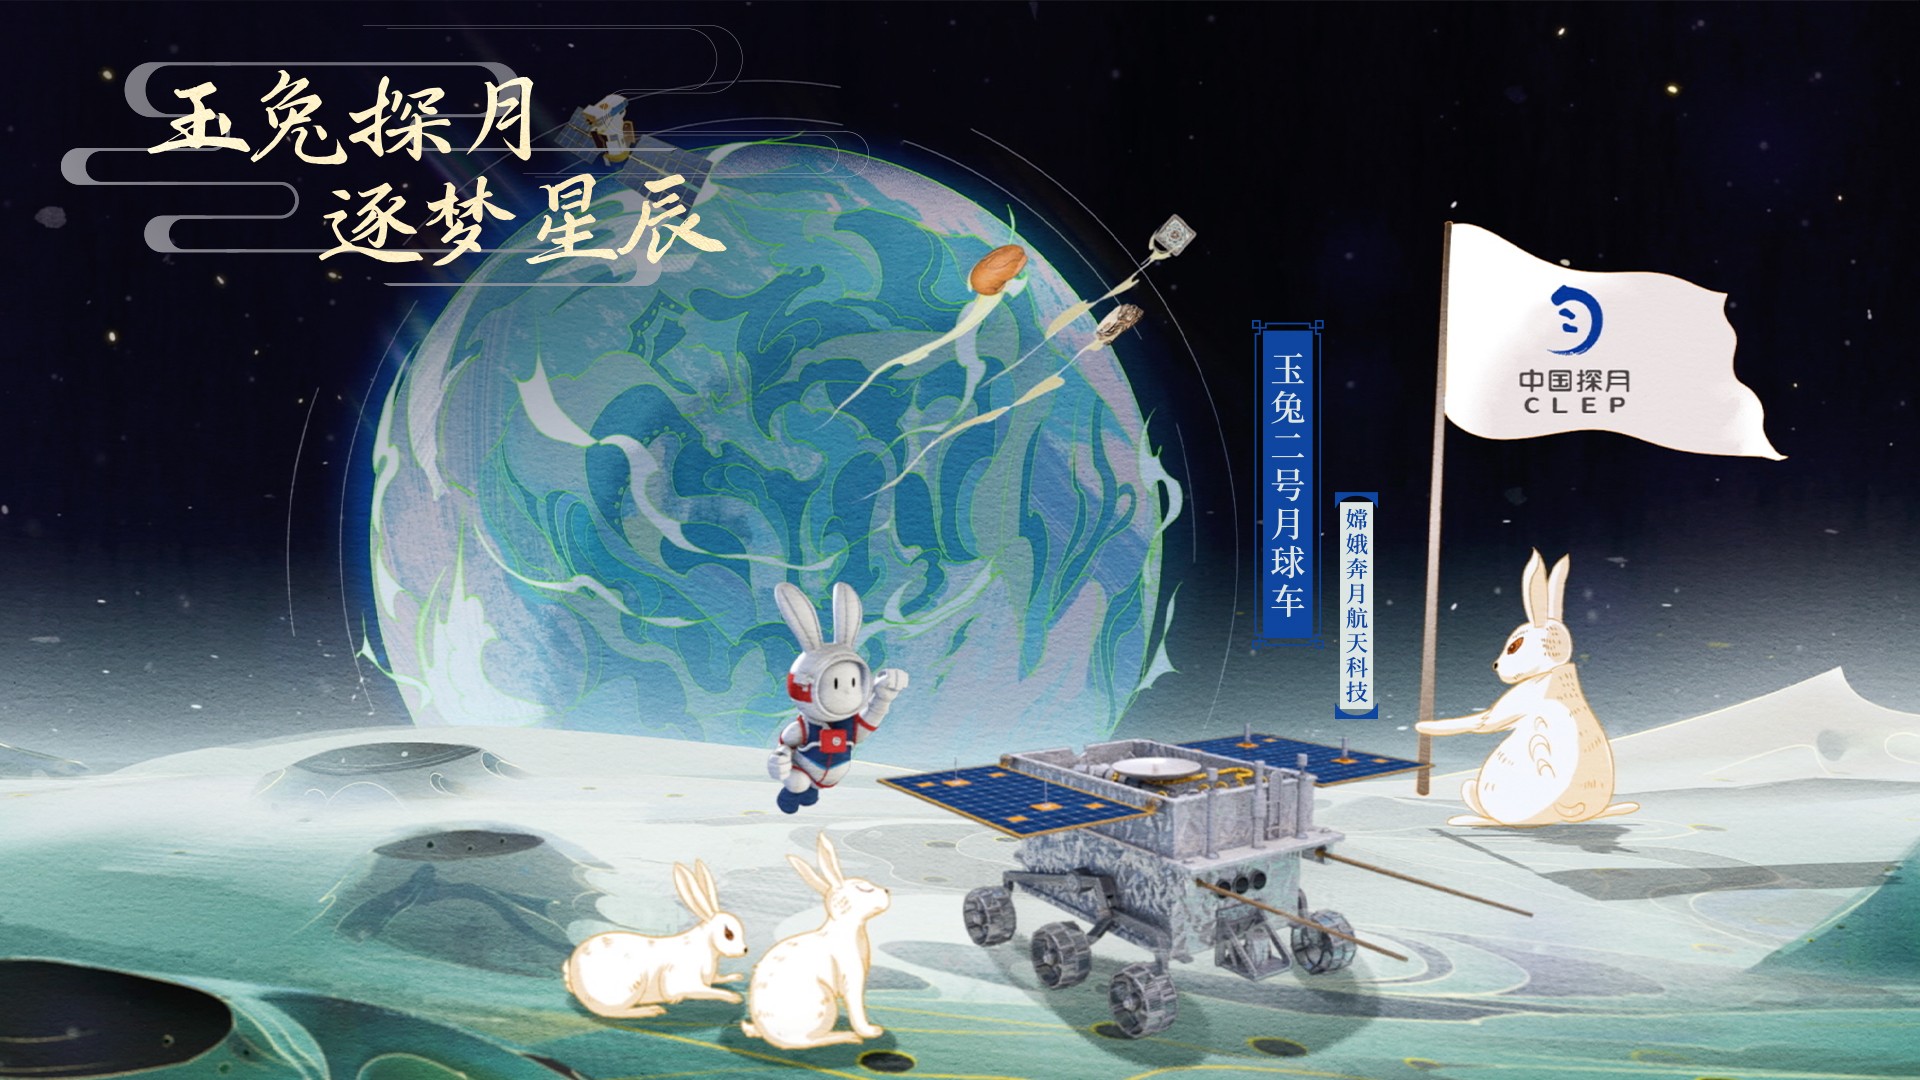 嫦娥奔月航天科技“玉兔二号月球车”.jpg